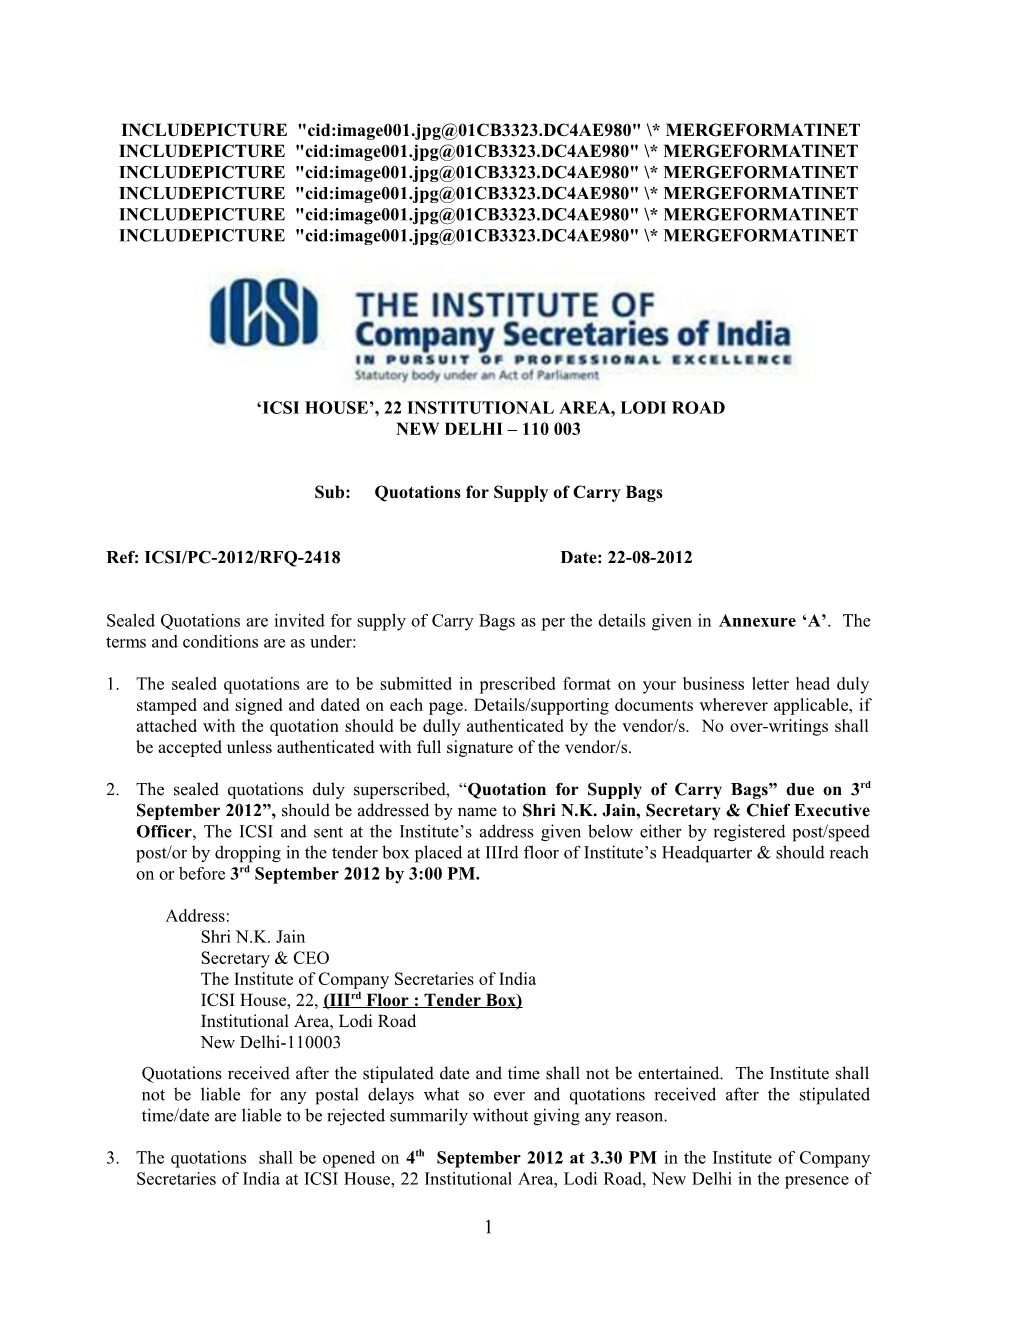 The Institute of Company Secretaries of India s1